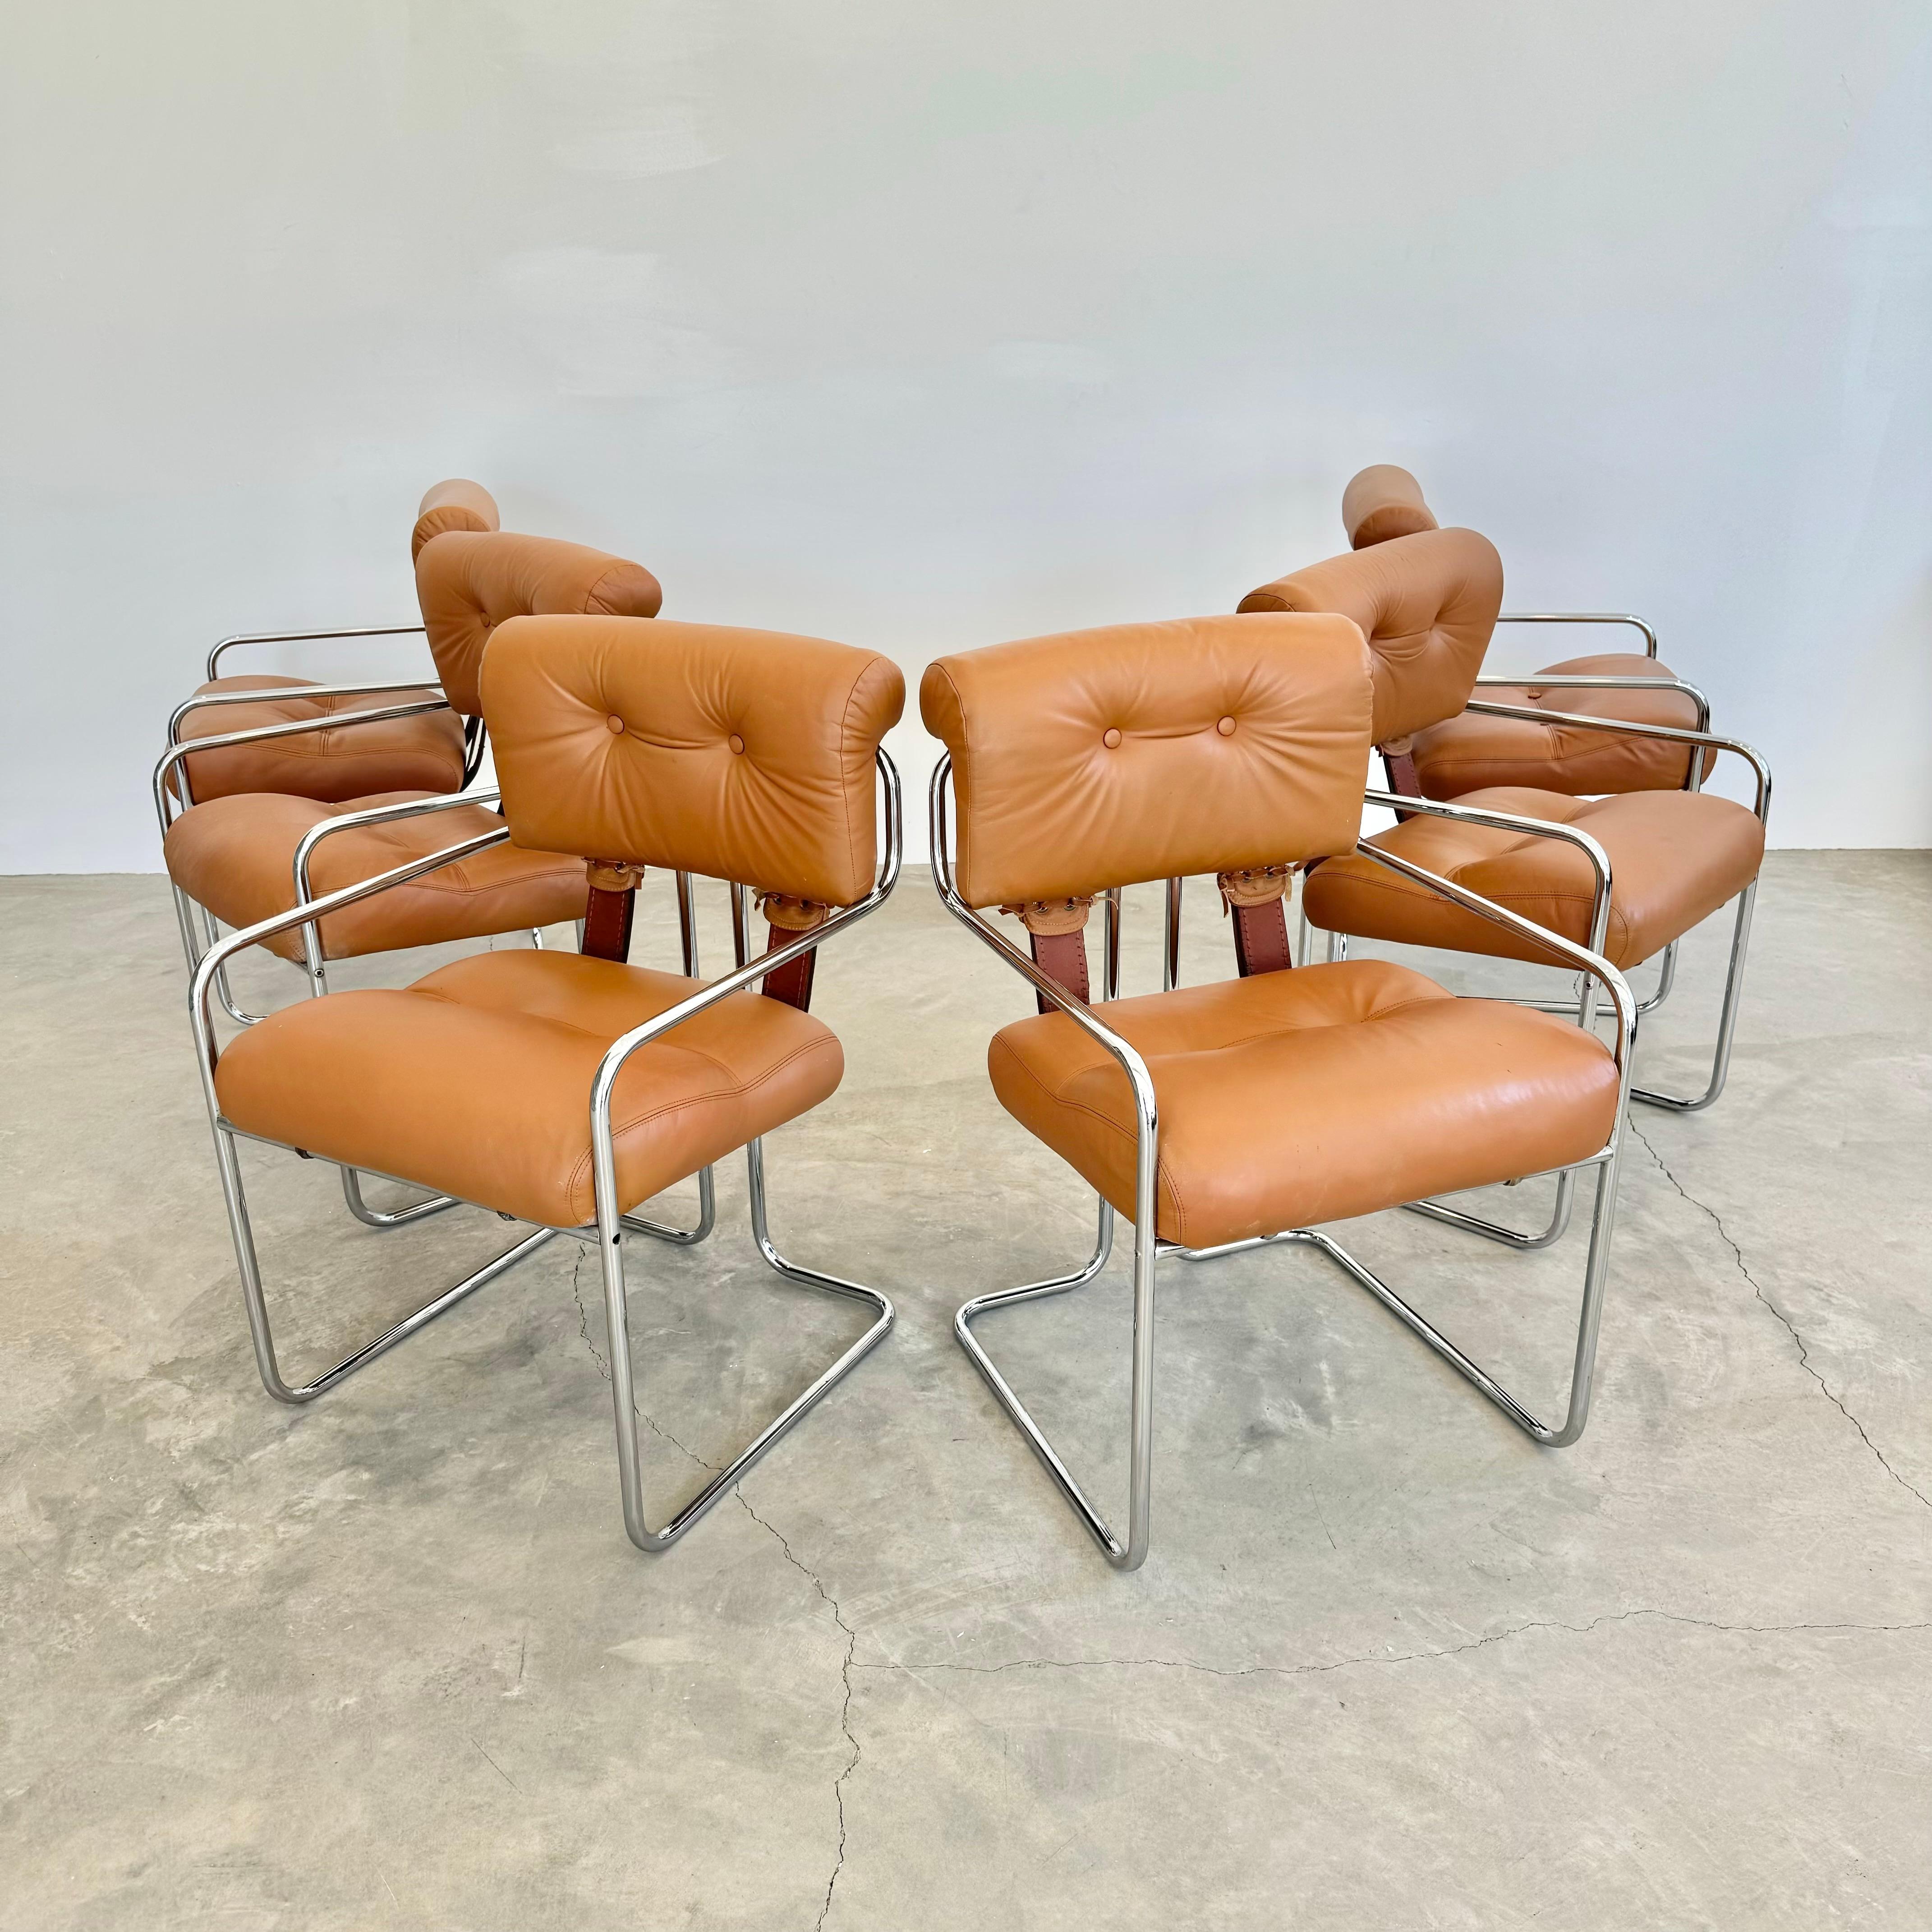 Wunderschöner Satz von 6 Tucroma-Stühlen von Guido Faleschini für Mariani, Pace. Schöne, ursprüngliche, tan Ledersitze und Sitzlehnen zusammen mit klassischen Chromrohrrahmen. Diese Stühle stehen für modernes italienisches Design und verwandeln